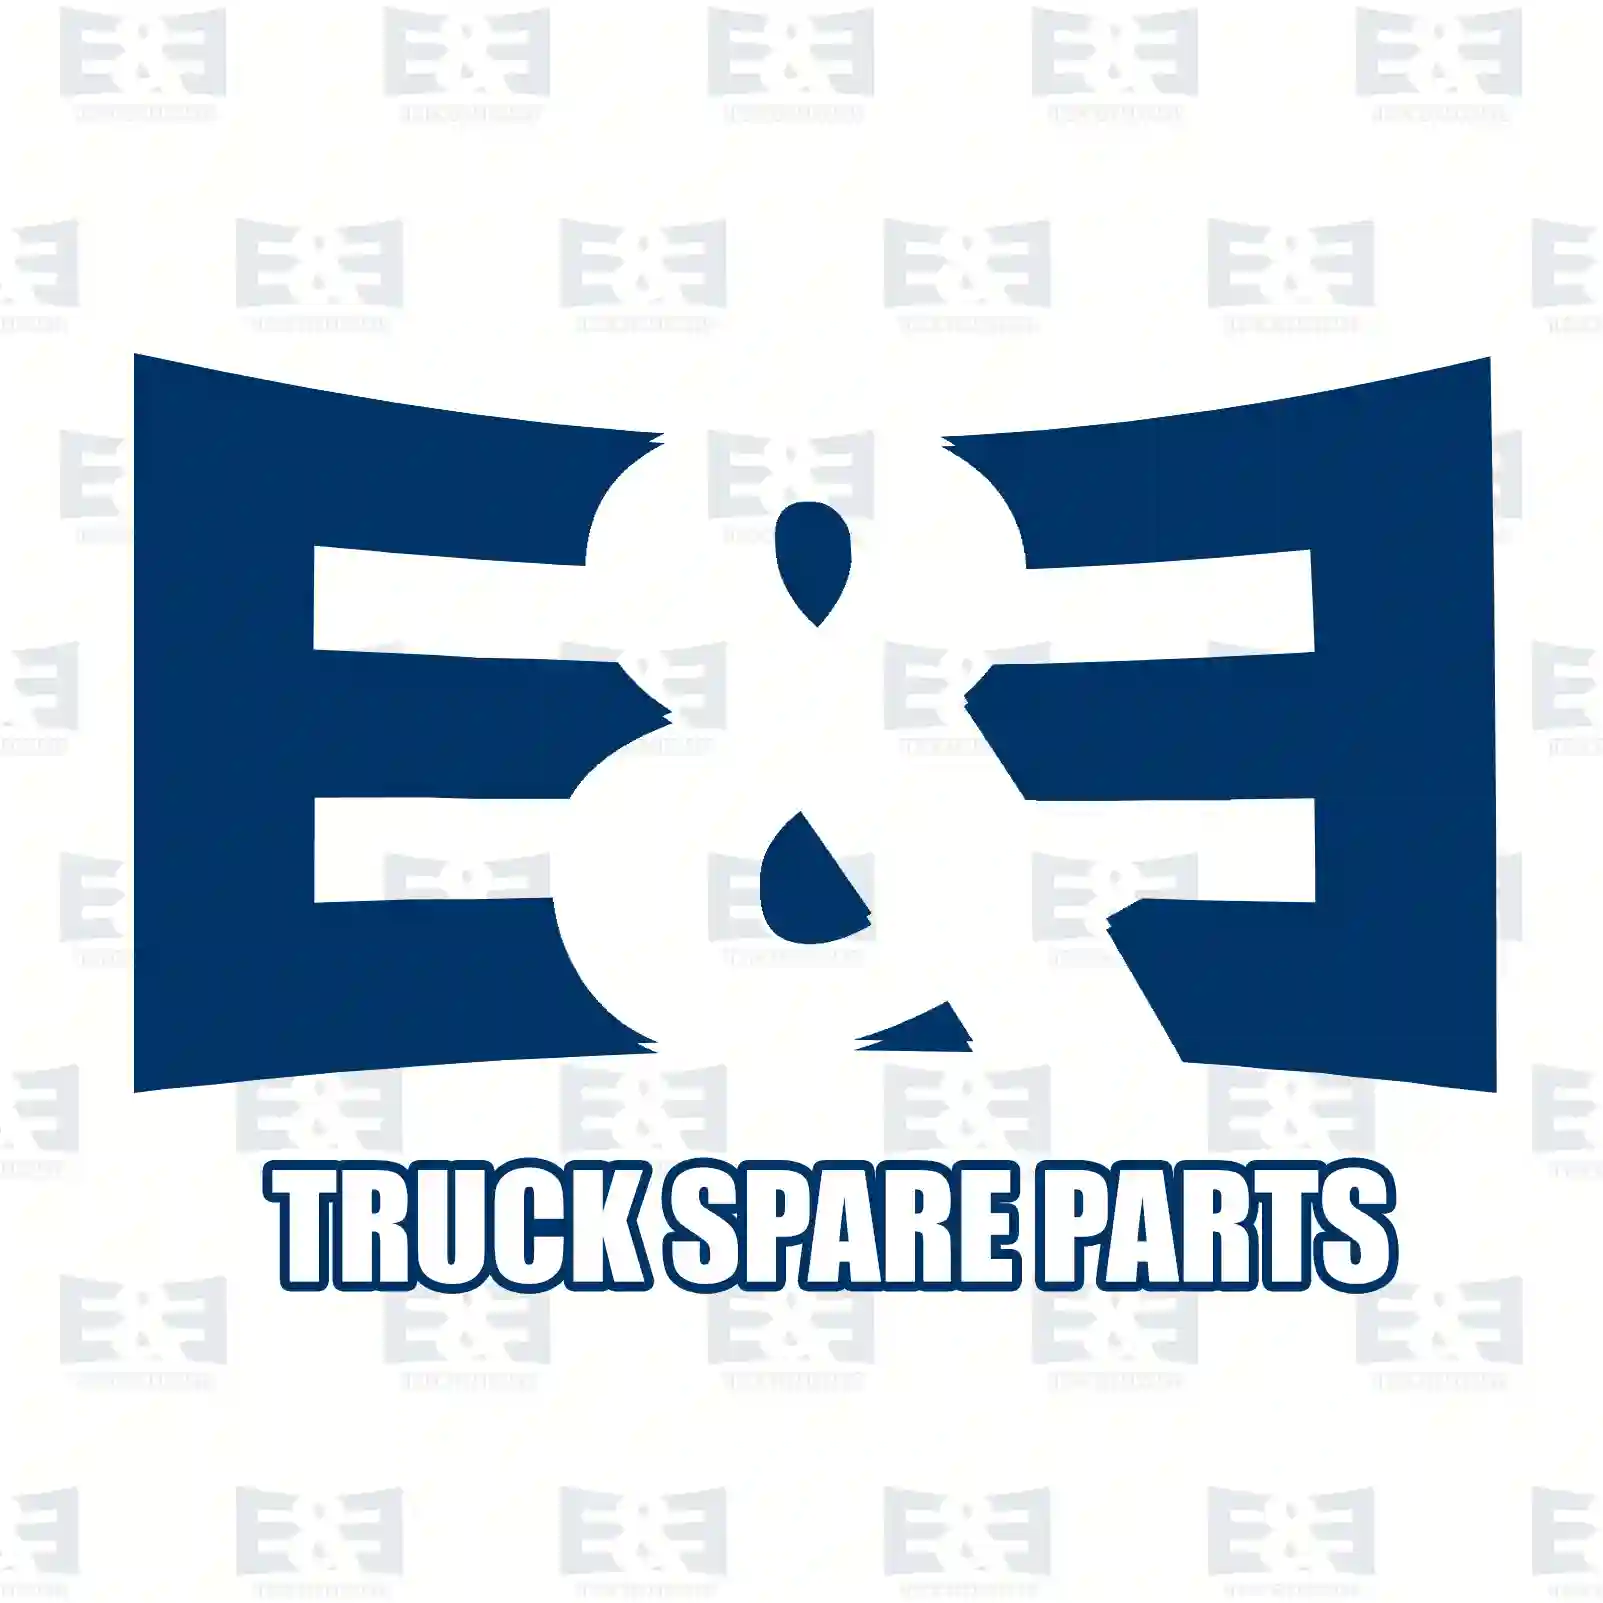 Gas spring, rear flap, 2E2292445, 1C15-V406A10-CC, 1C15-V406A10-DC, 4134632, 4134633, 4159800064, 8200497806 ||  2E2292445 E&E Truck Spare Parts | Truck Spare Parts, Auotomotive Spare Parts Gas spring, rear flap, 2E2292445, 1C15-V406A10-CC, 1C15-V406A10-DC, 4134632, 4134633, 4159800064, 8200497806 ||  2E2292445 E&E Truck Spare Parts | Truck Spare Parts, Auotomotive Spare Parts